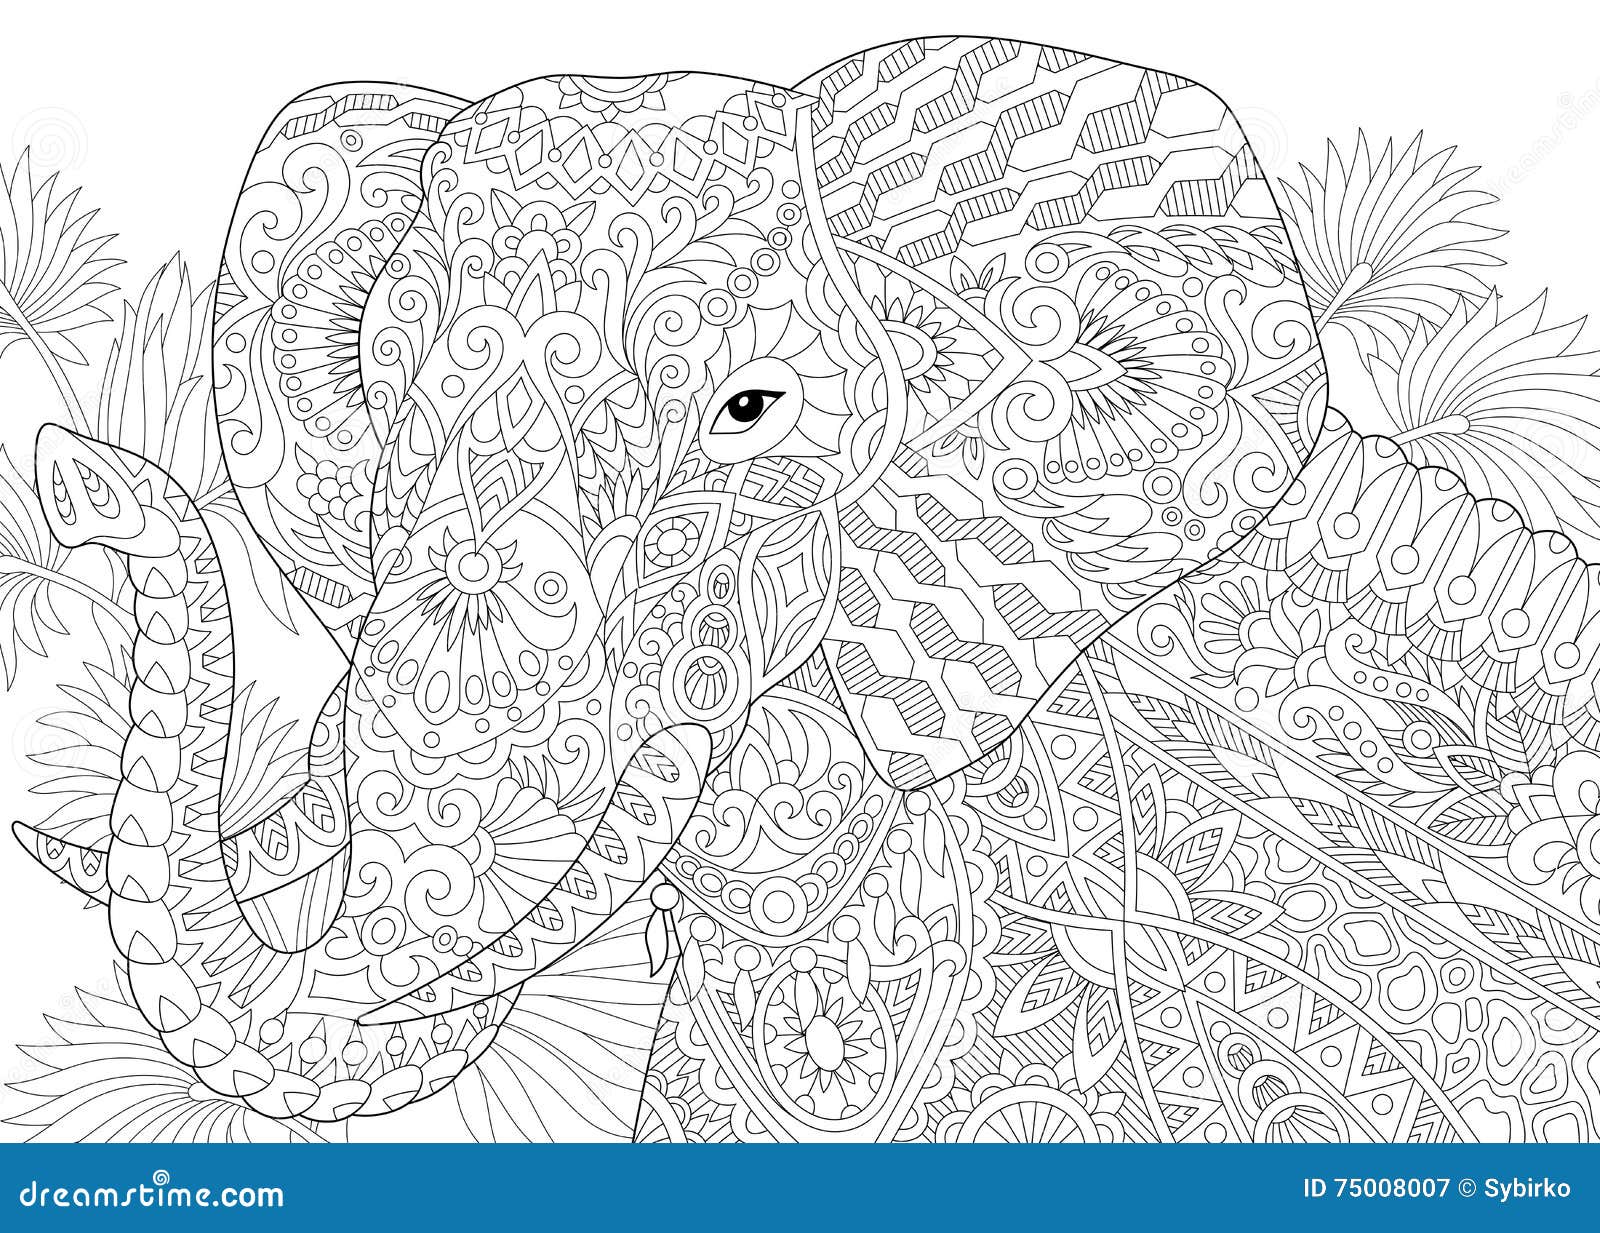 zentangle stylized elephant